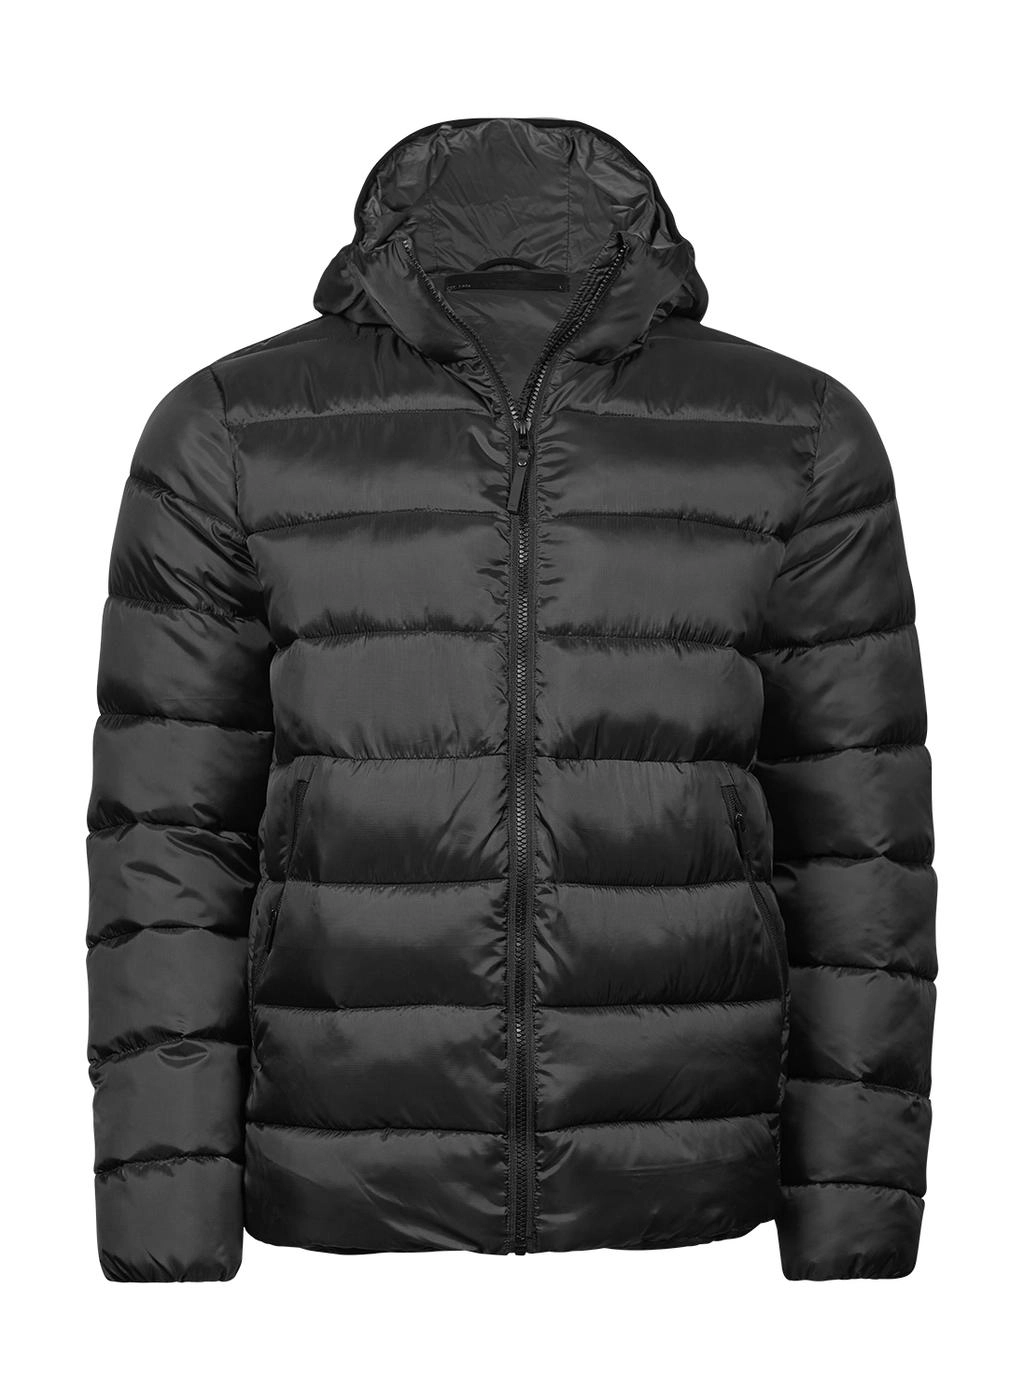 Lite Hooded Jacket zum Besticken und Bedrucken in der Farbe Black mit Ihren Logo, Schriftzug oder Motiv.